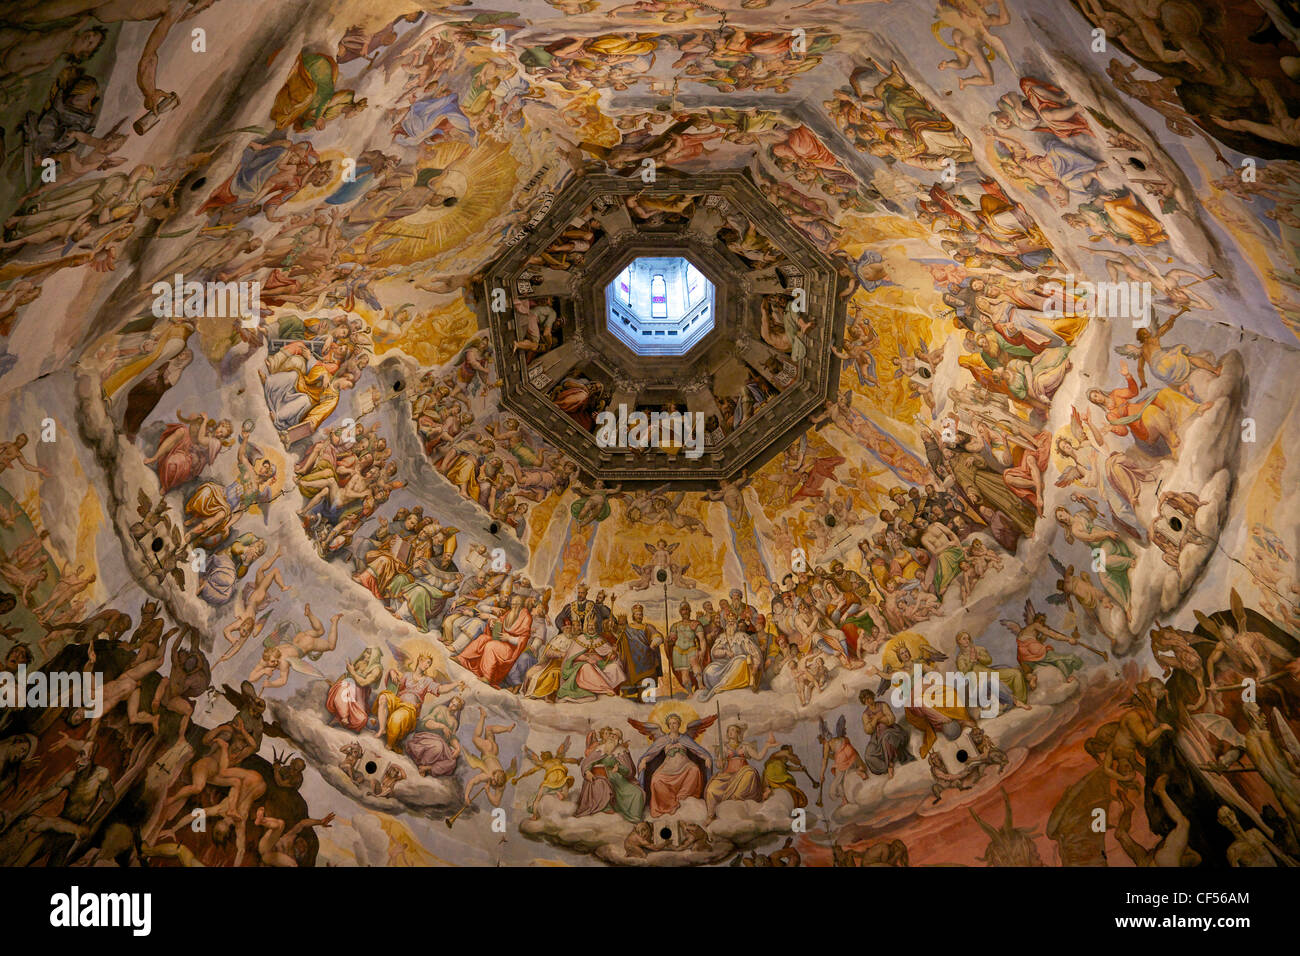 Letztes Urteil Fresken der Kuppel von Brunelleschi, von Vasari und Zuccari, Florenz, Toskana, Italien, Europa Stockfoto